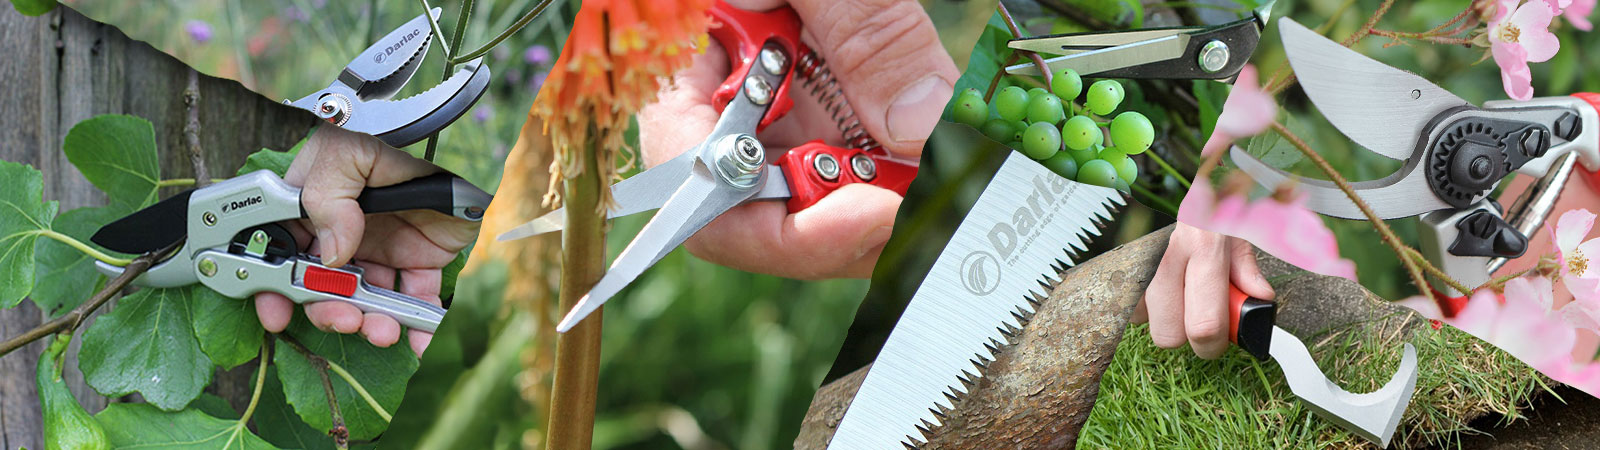 Darlac garden tools